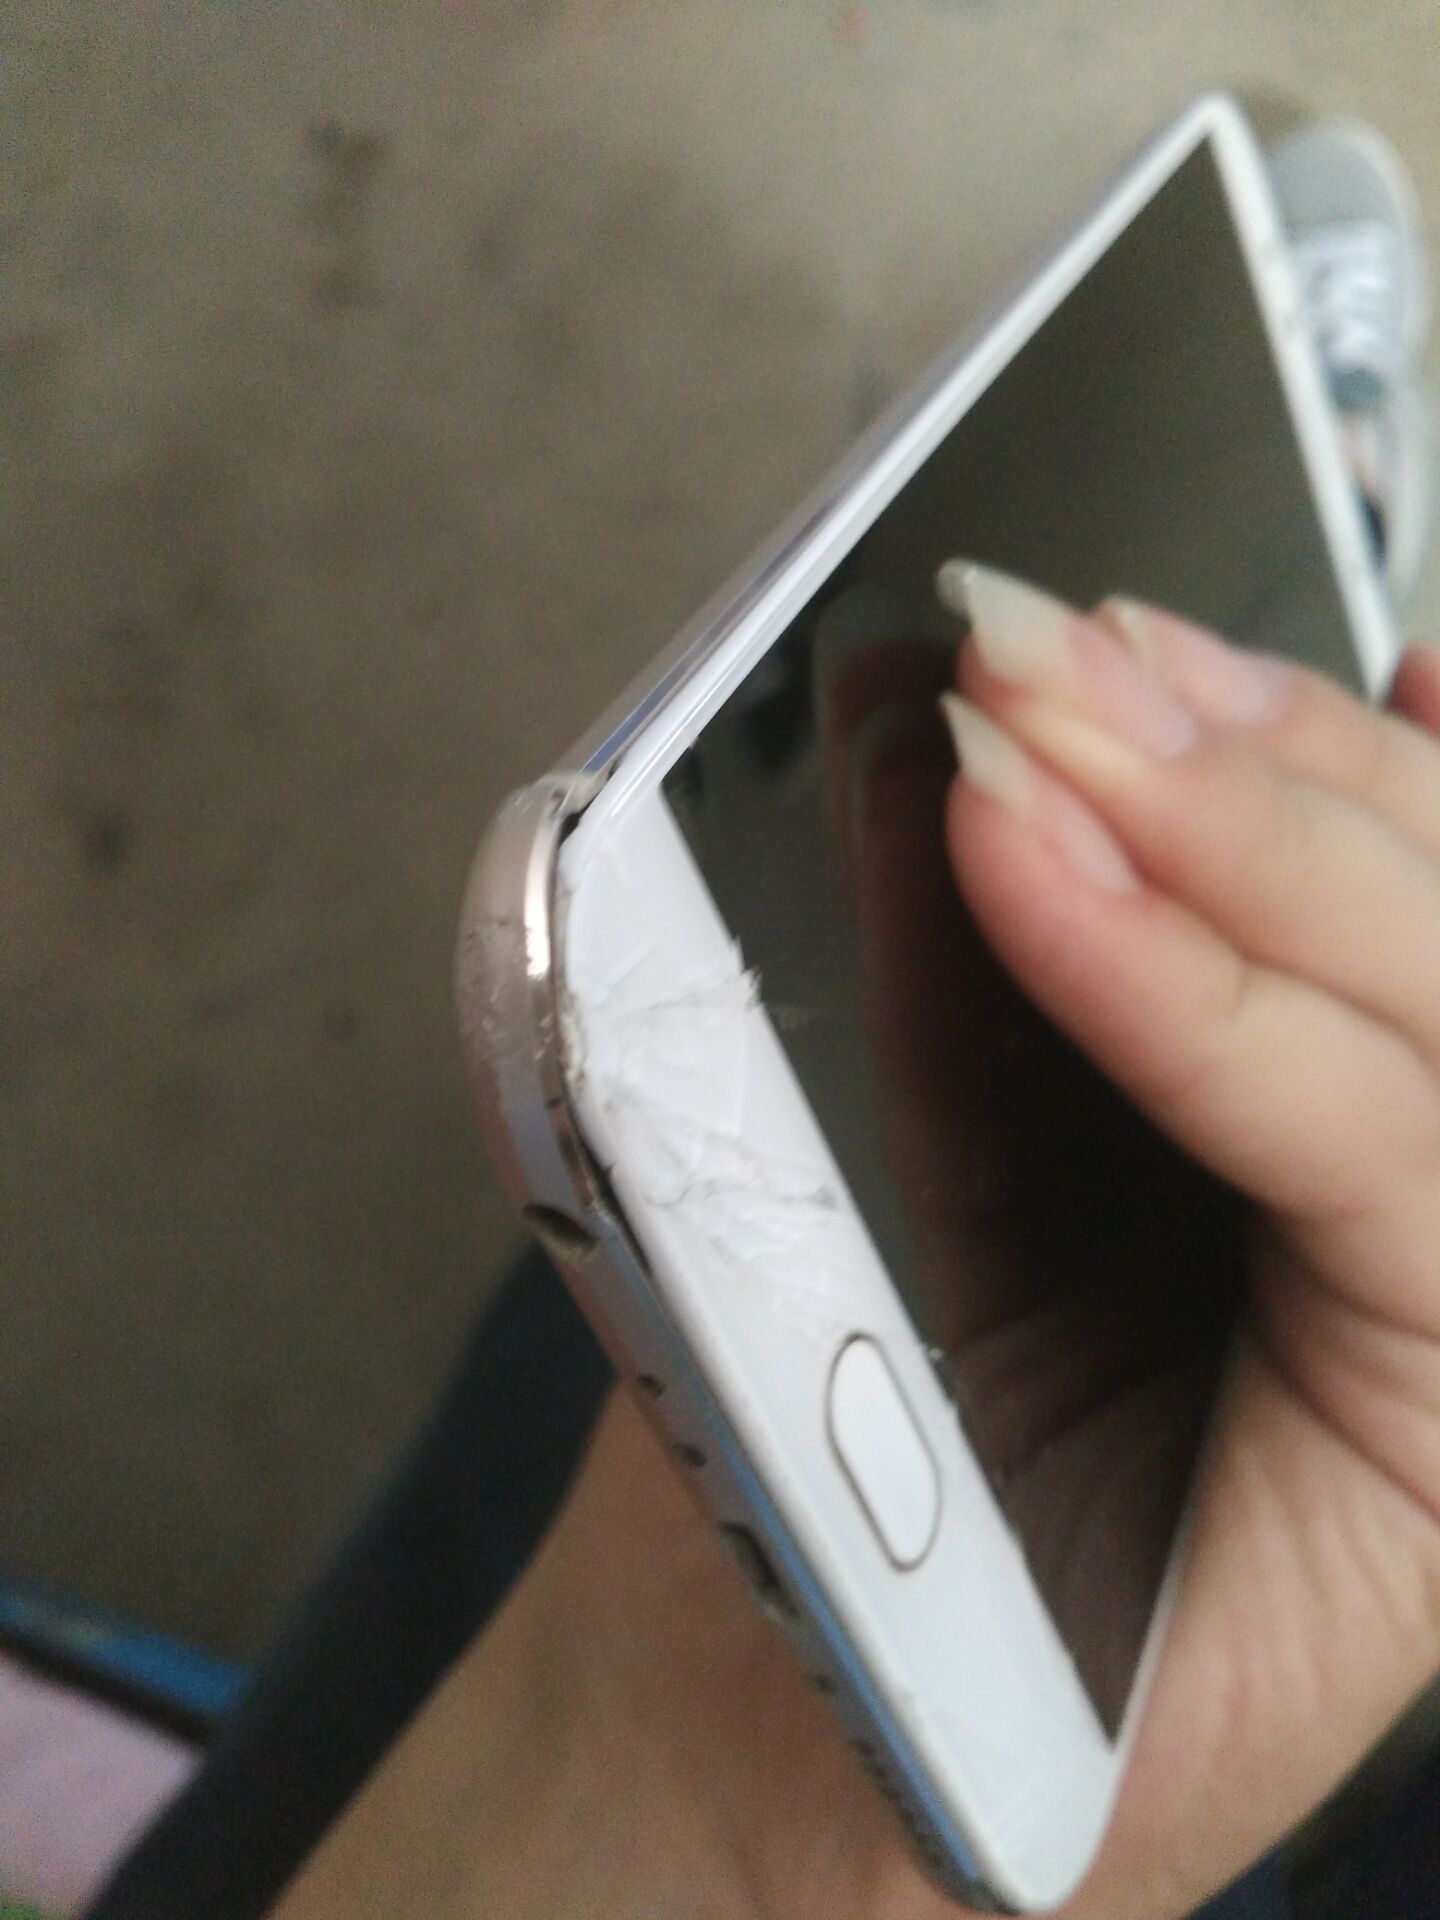 手机摔坏了,屏幕全碎,后盖翘起,能保修吗?